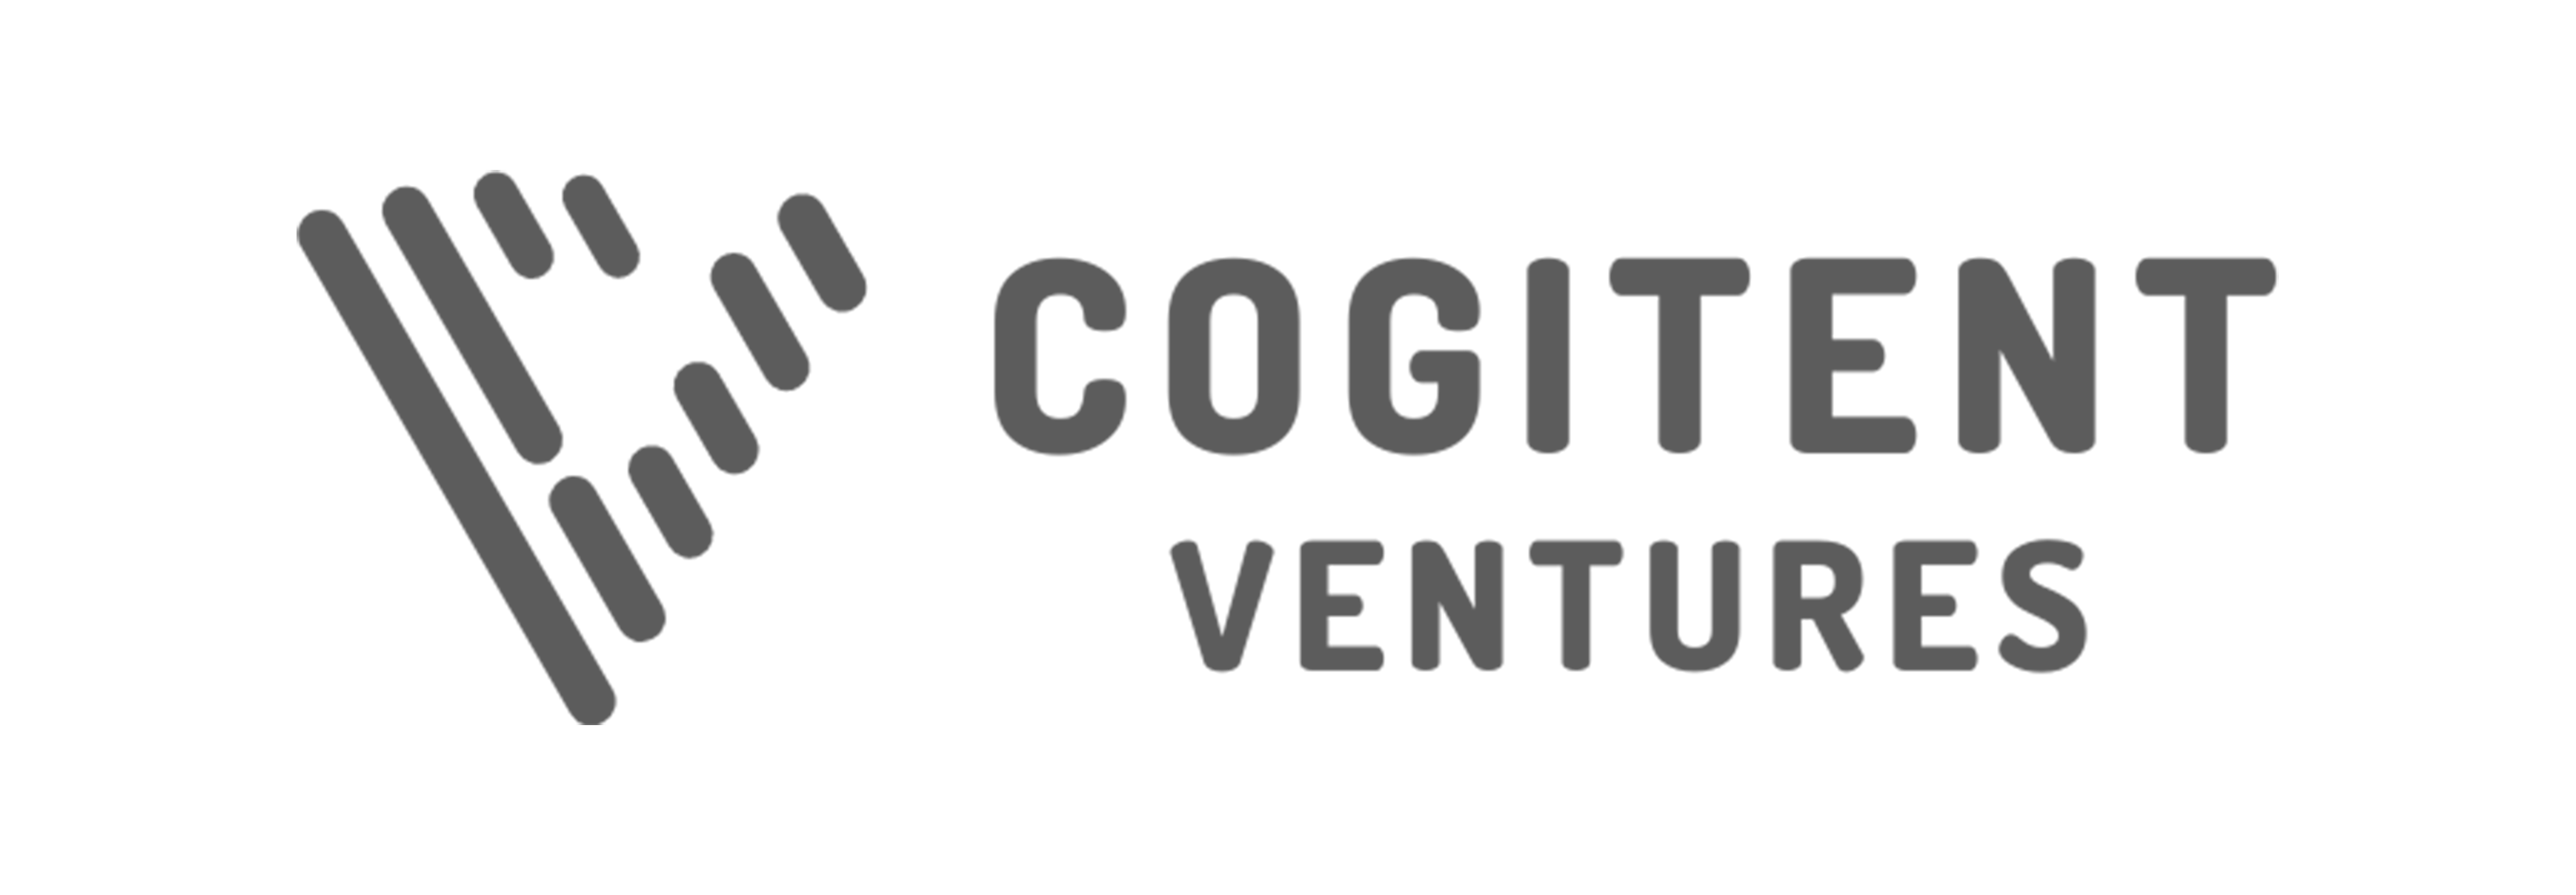 Cogitent Ventures | Lead investor